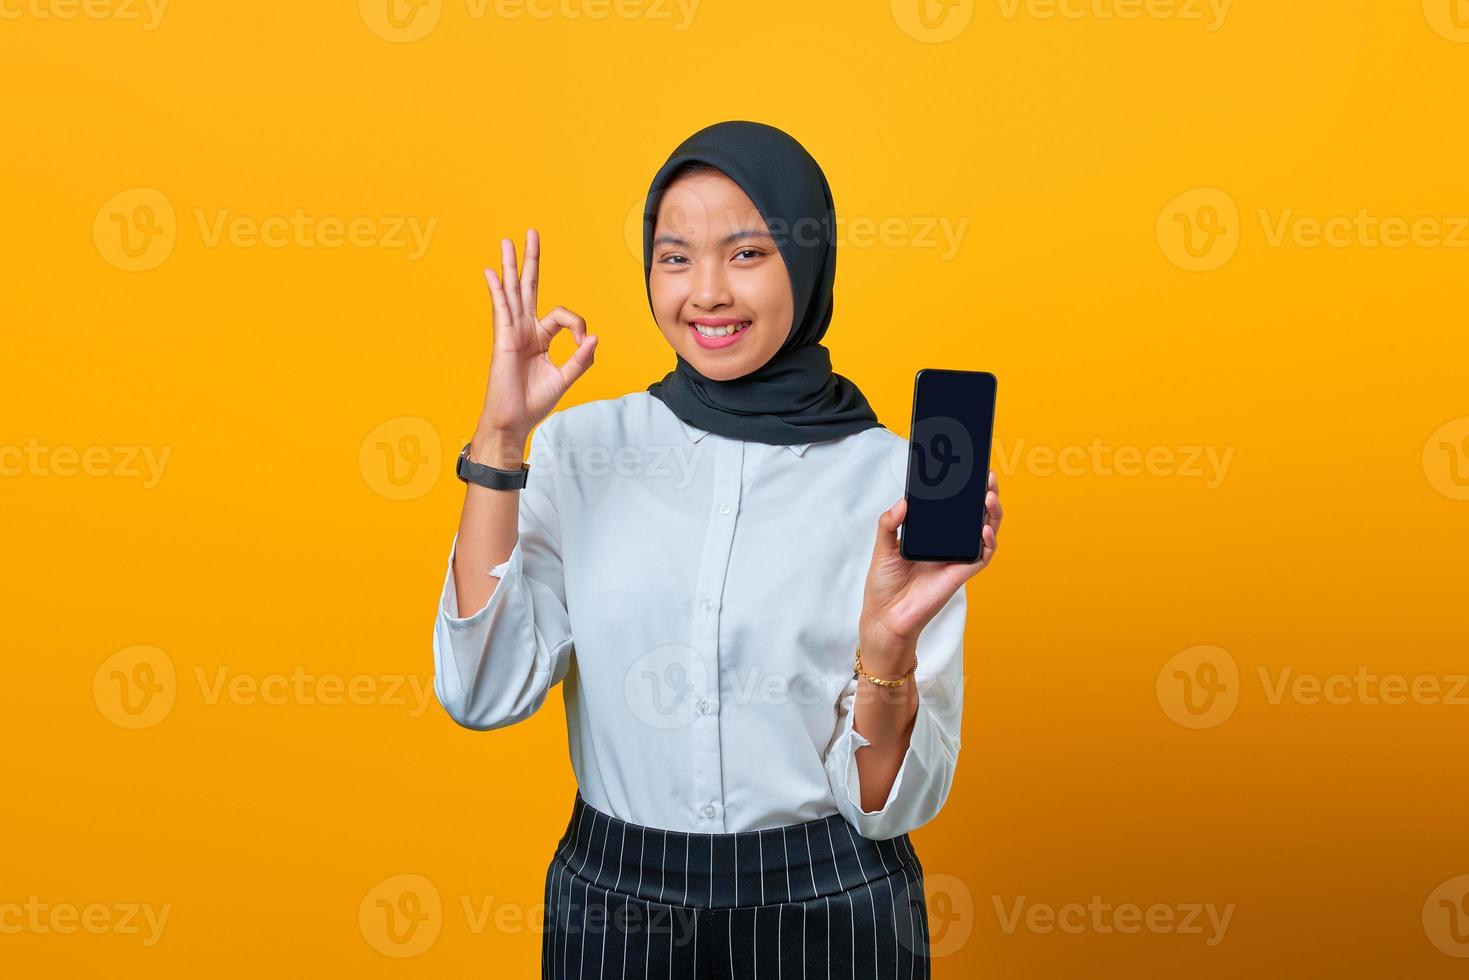 femme asiatique heureuse montrant un écran vide de téléphone portable et un geste de la main d'accord sur fond jaune photo